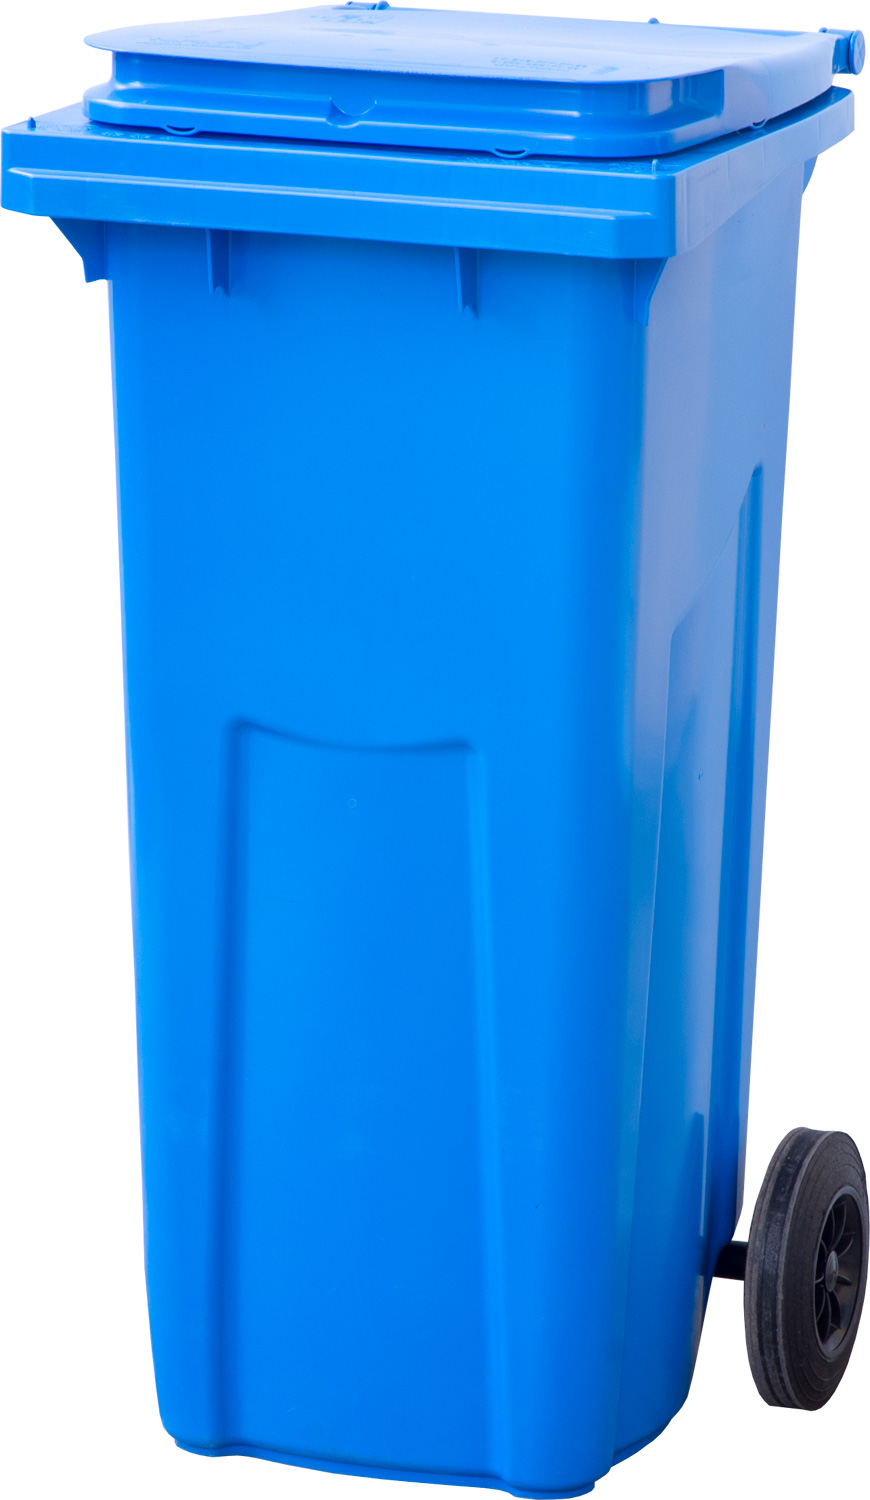 Мусорный контейнер МКТ 120 синий для сбора мусора